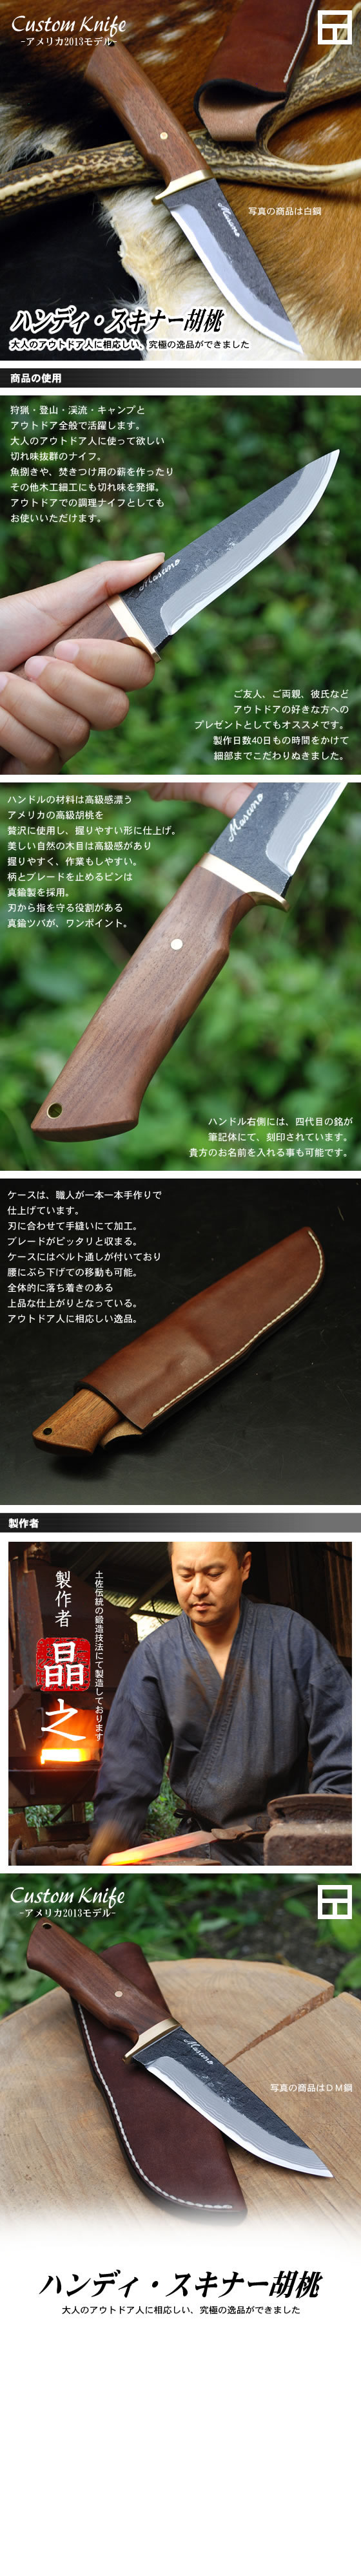 Custom Knife アメリカモデル2013 ハンディ・スキナー胡桃